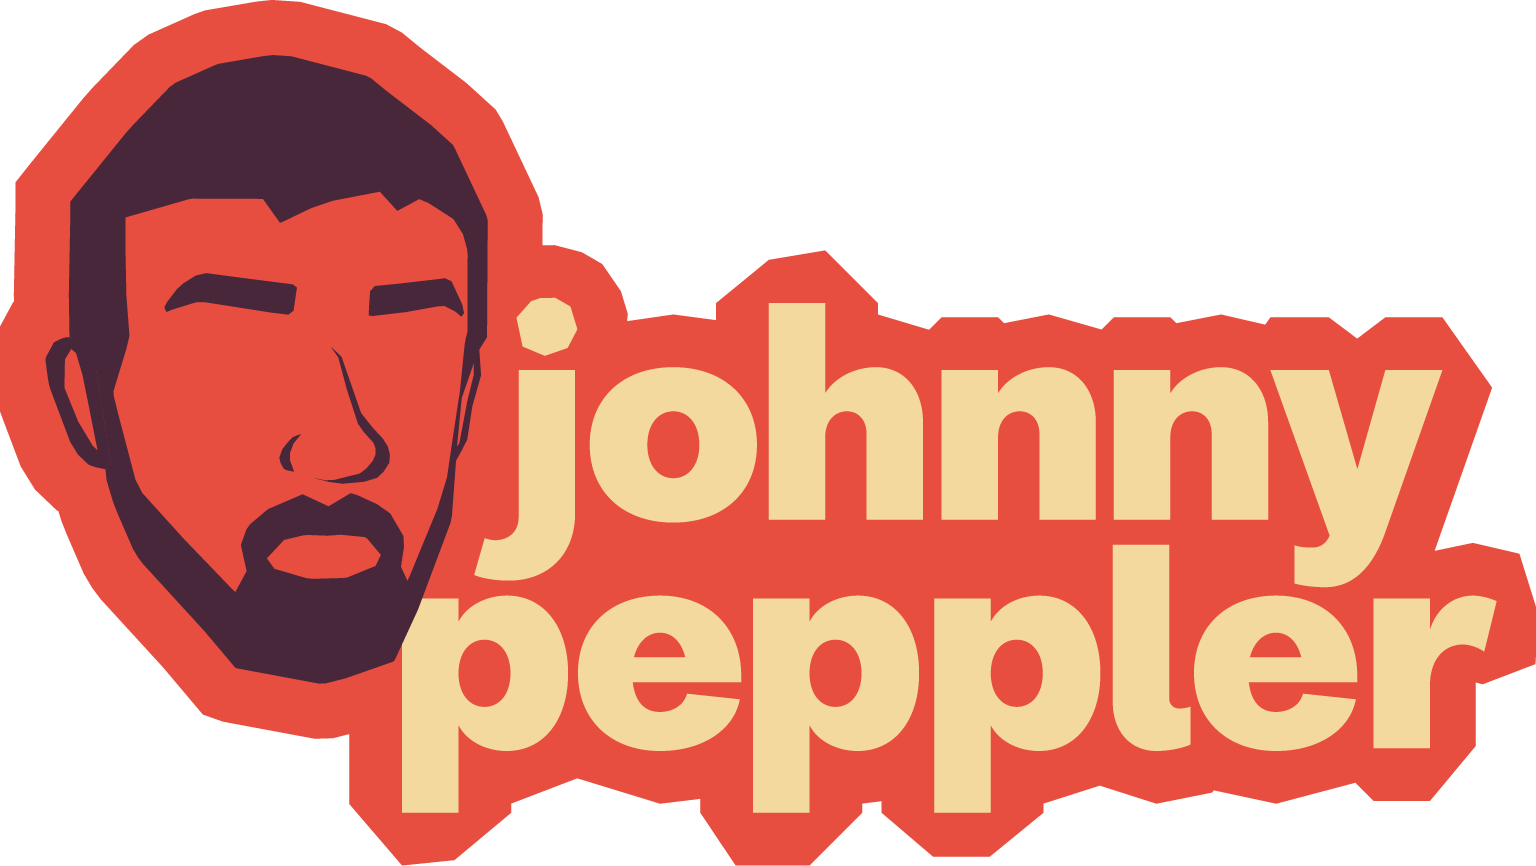 johnny peppler